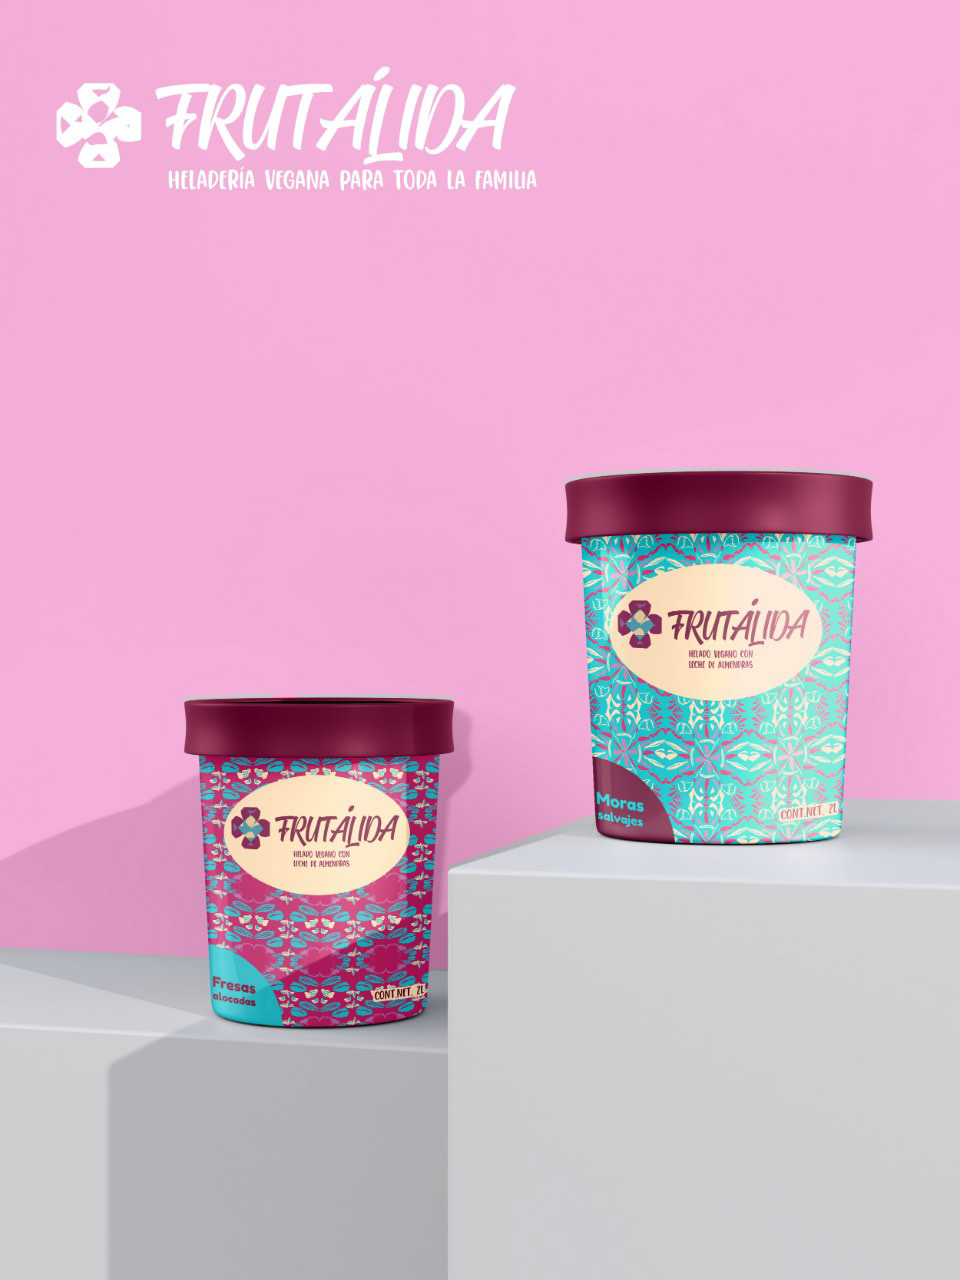 AZUL diseño grafico helado ilustracion morado nueces Patronderepeticion rosa texturas